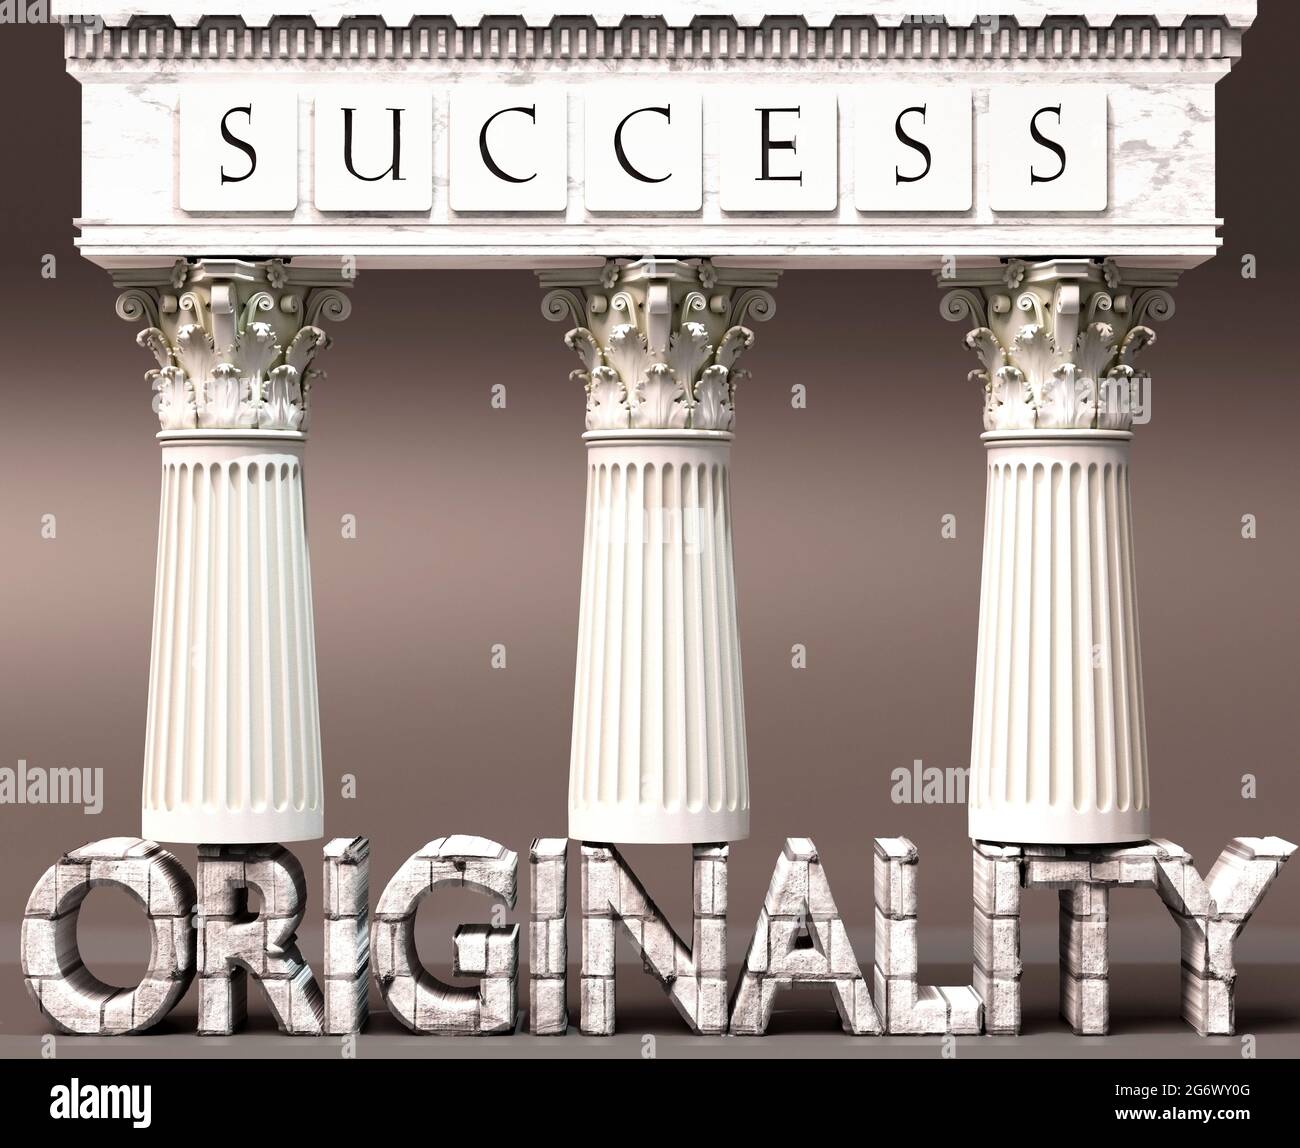 La originalidad como base del éxito - simbolizado por los pilares del éxito apoyado por la originalidad para demostrar que es esencial para alcanzar metas y. Foto de stock